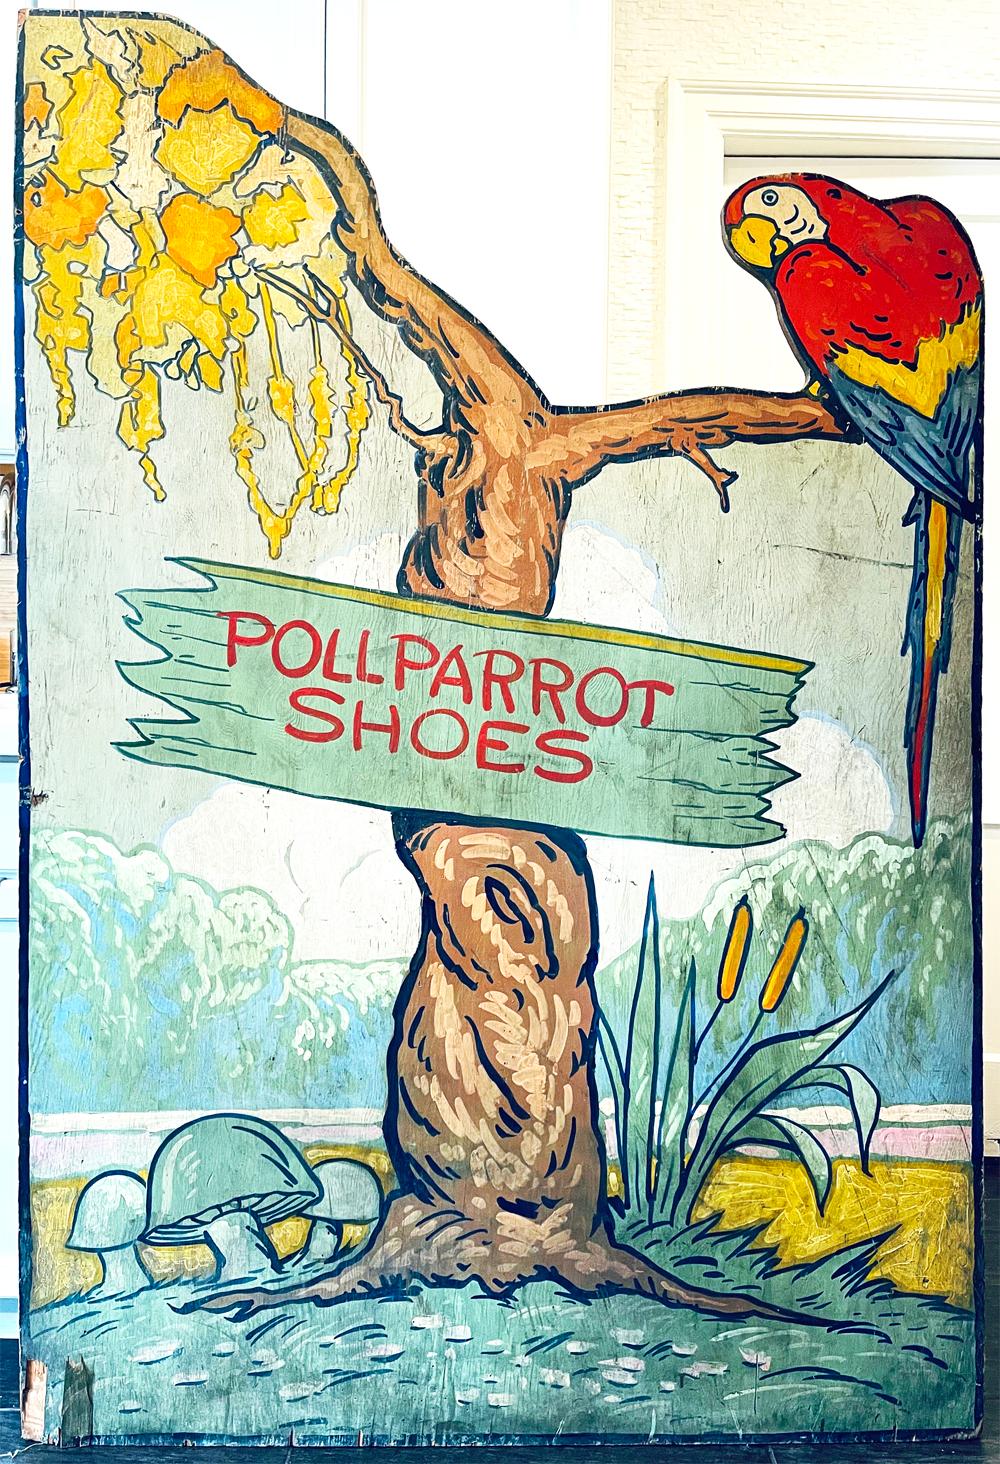 Dieses große, seltene Schild, das von einem Werbegrafiker brillant bemalt wurde, war möglicherweise das ehrgeizigste Marketingobjekt, das die Poll-Parrot Shoe Company, einer der führenden amerikanischen Anbieter von Kinderschuhen vom frühen 20.